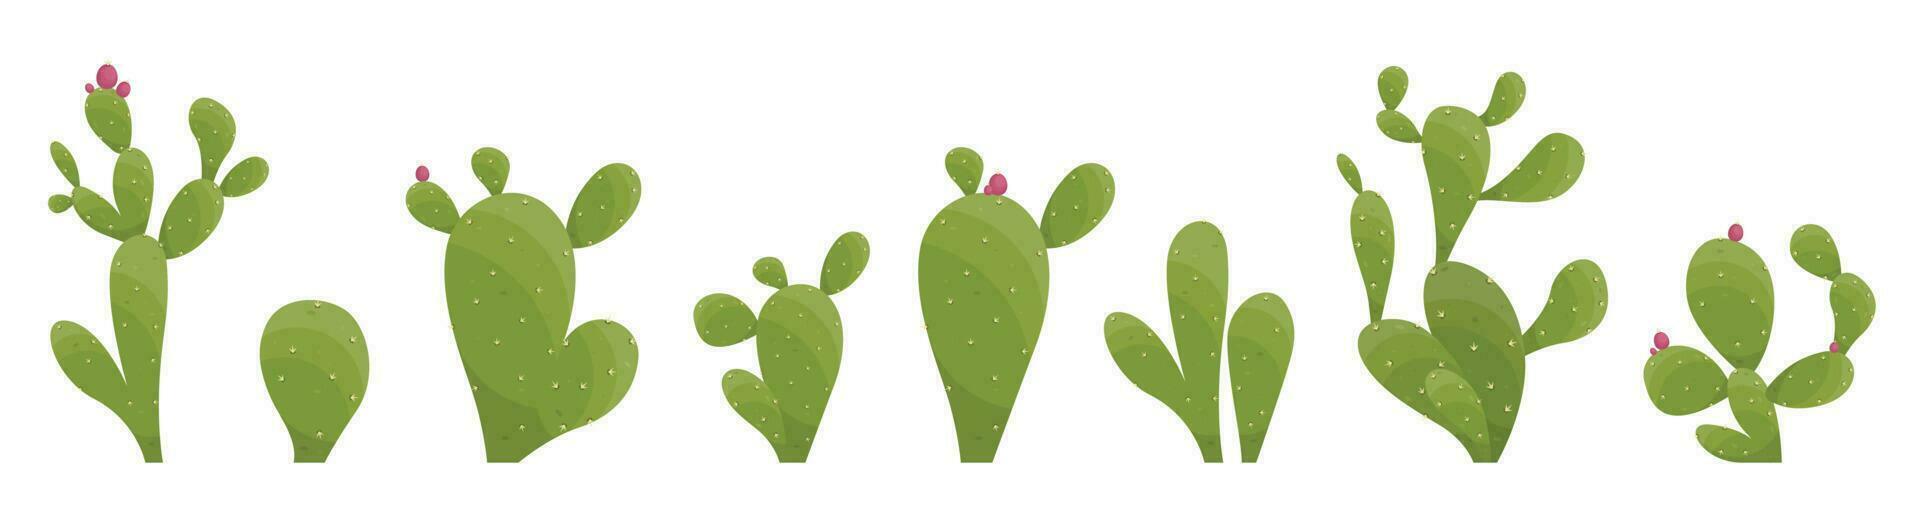 cartone animato deserto cactus impianti isolato su bianca. deserto impianti vettore illustrazione